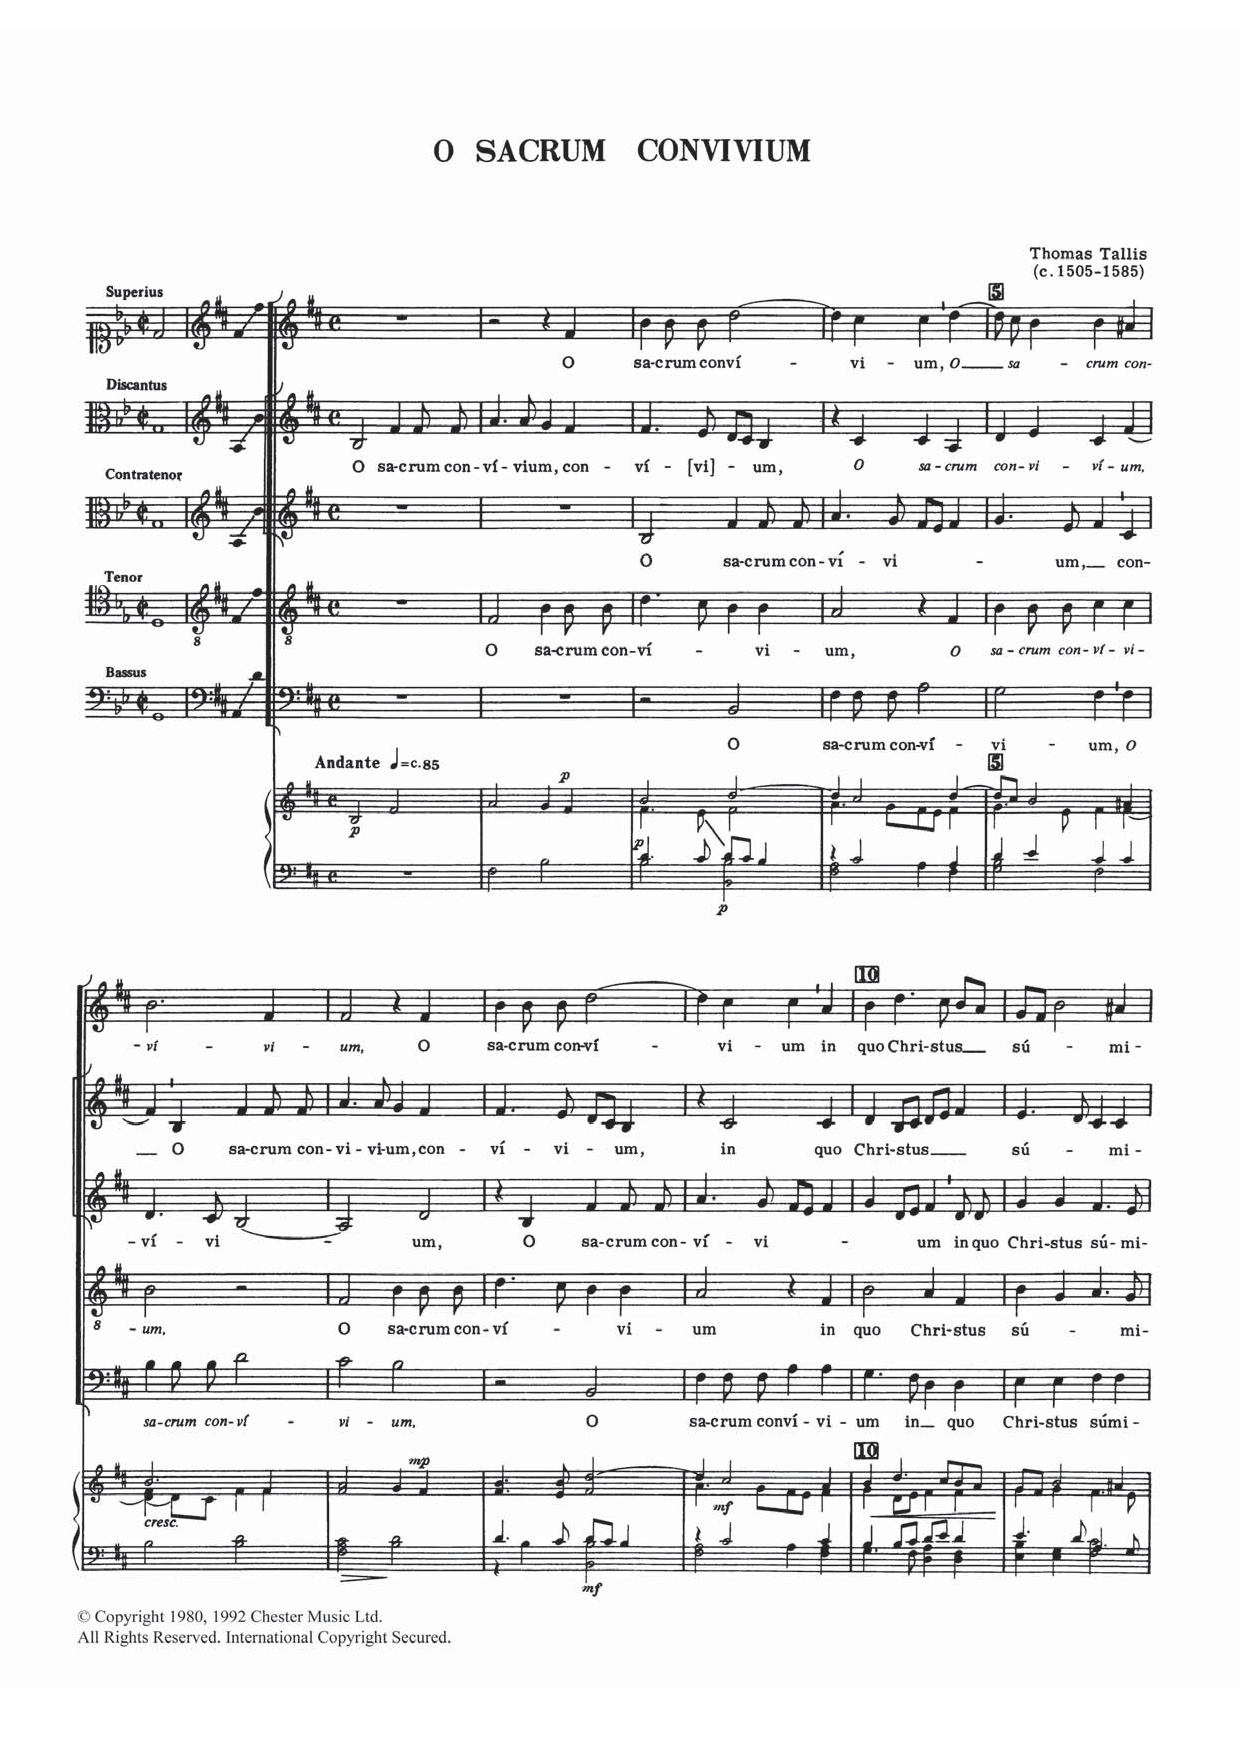 Download Thomas Tallis O Sacrum Convivium Sheet Music